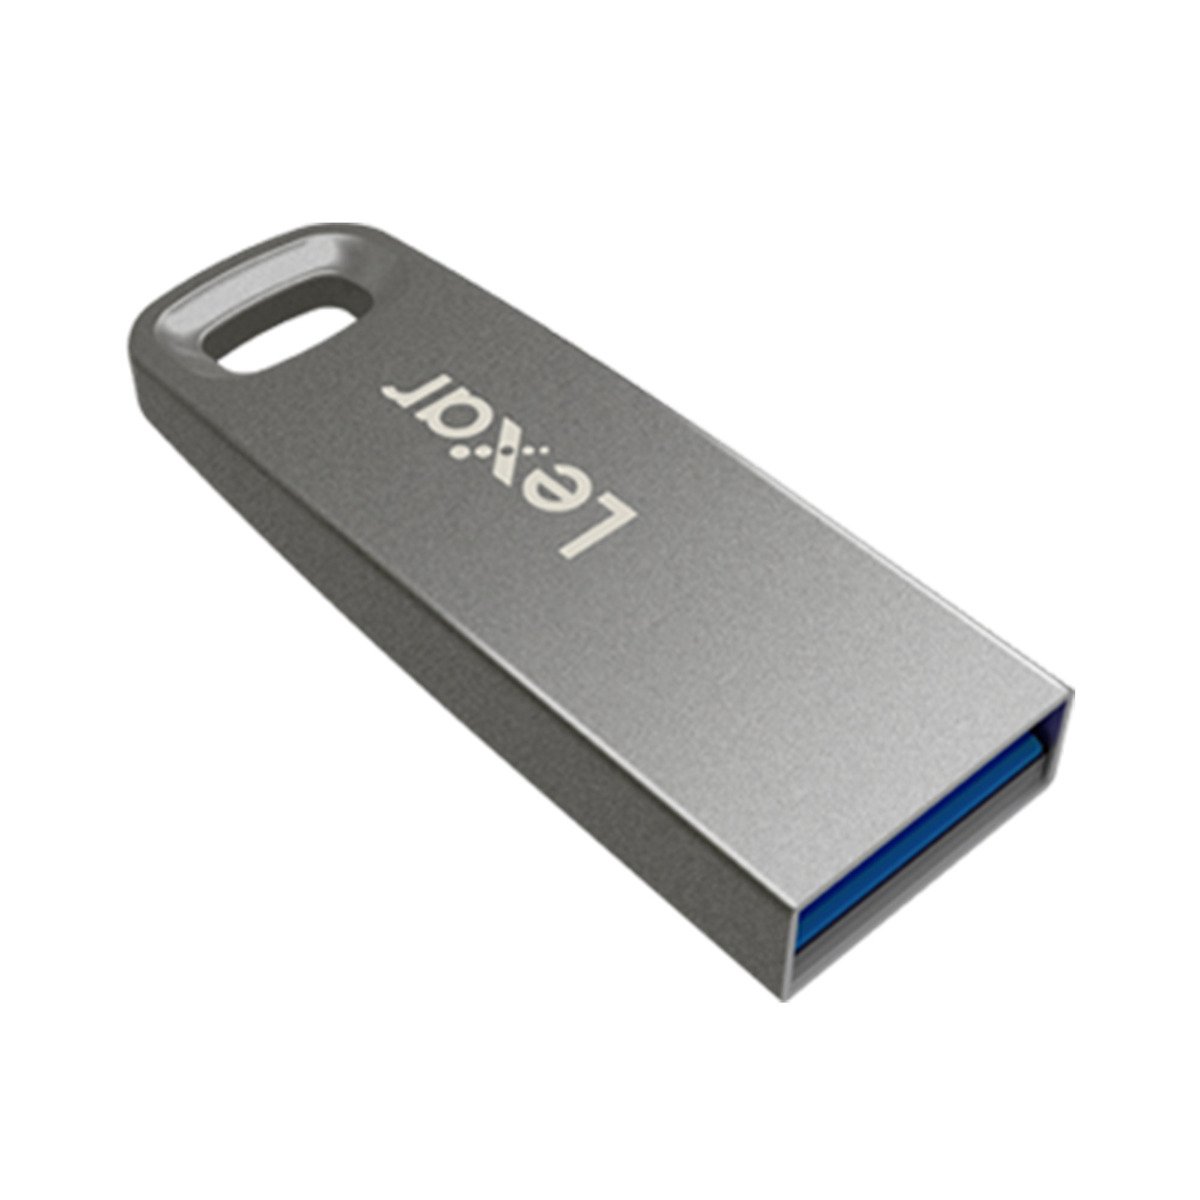 Lexar USB Flash Drives LJDM45 64GB